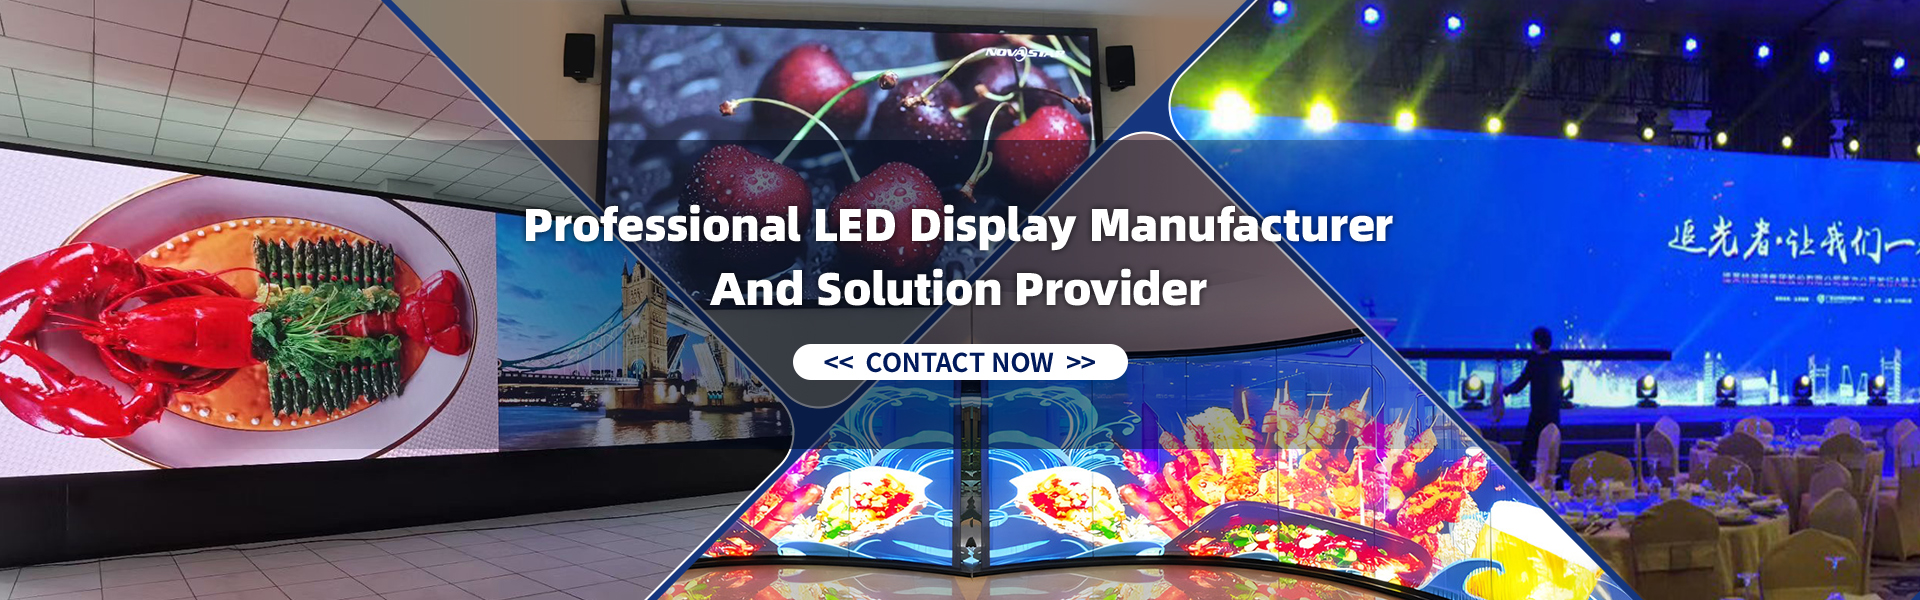 LED display case presentation